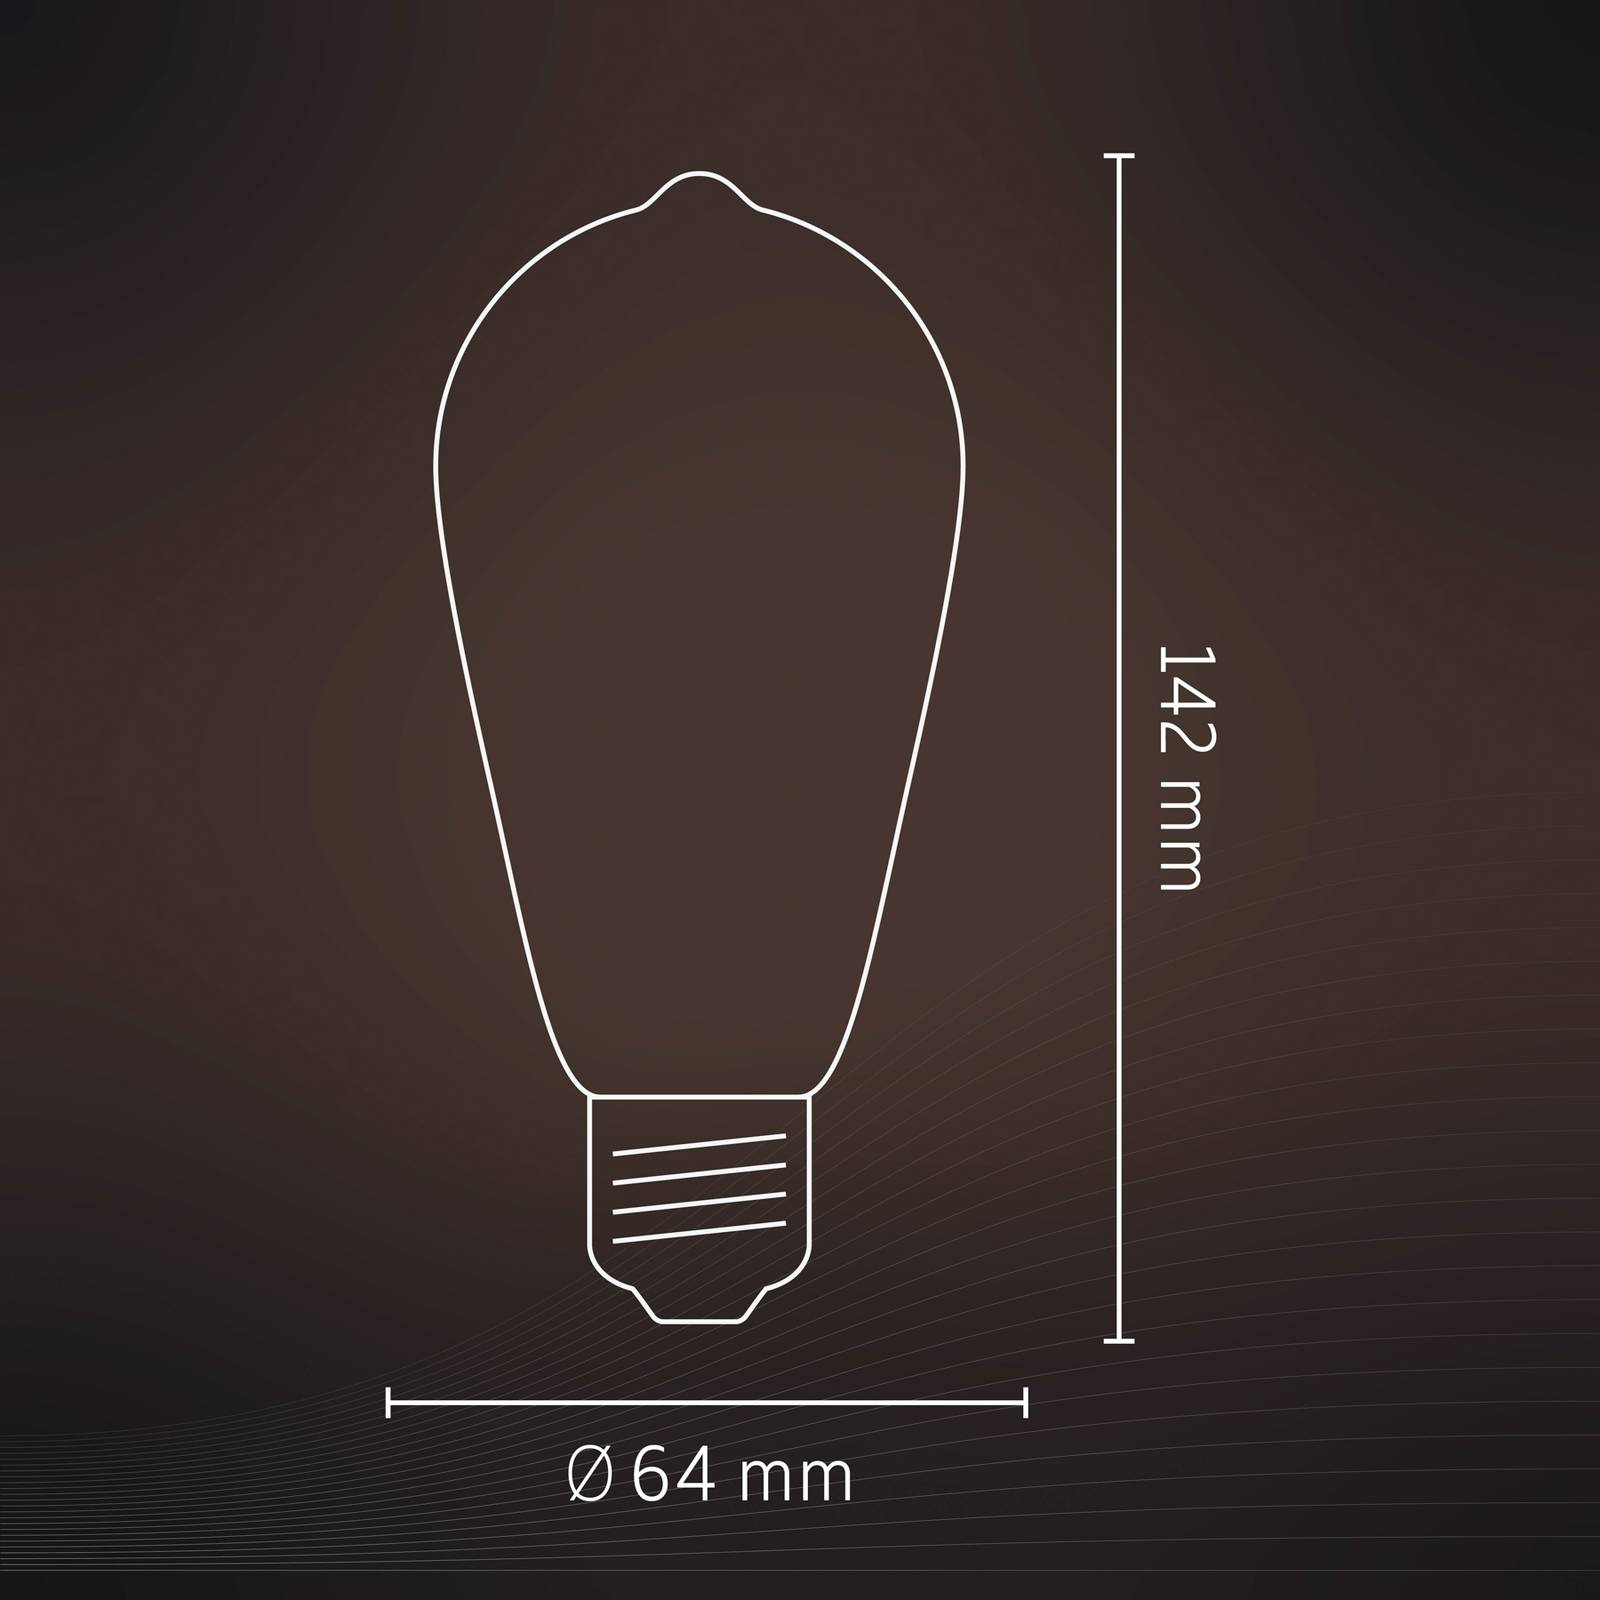 Calex Calex Smart E27 ST64 LED 4,9W filament RGBW